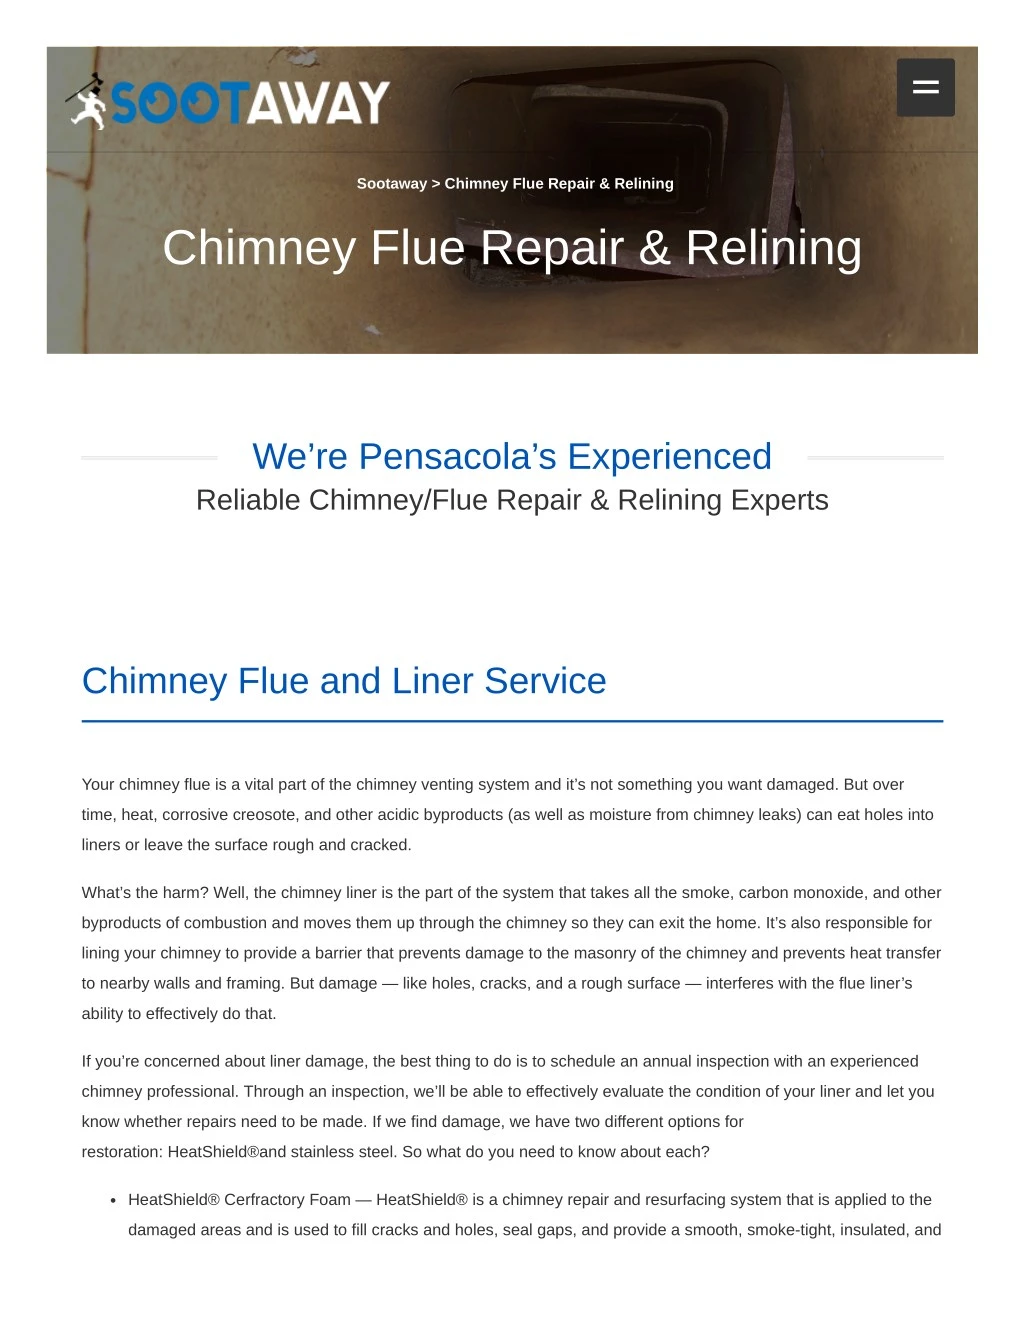 sootaway chimney flue repair relining